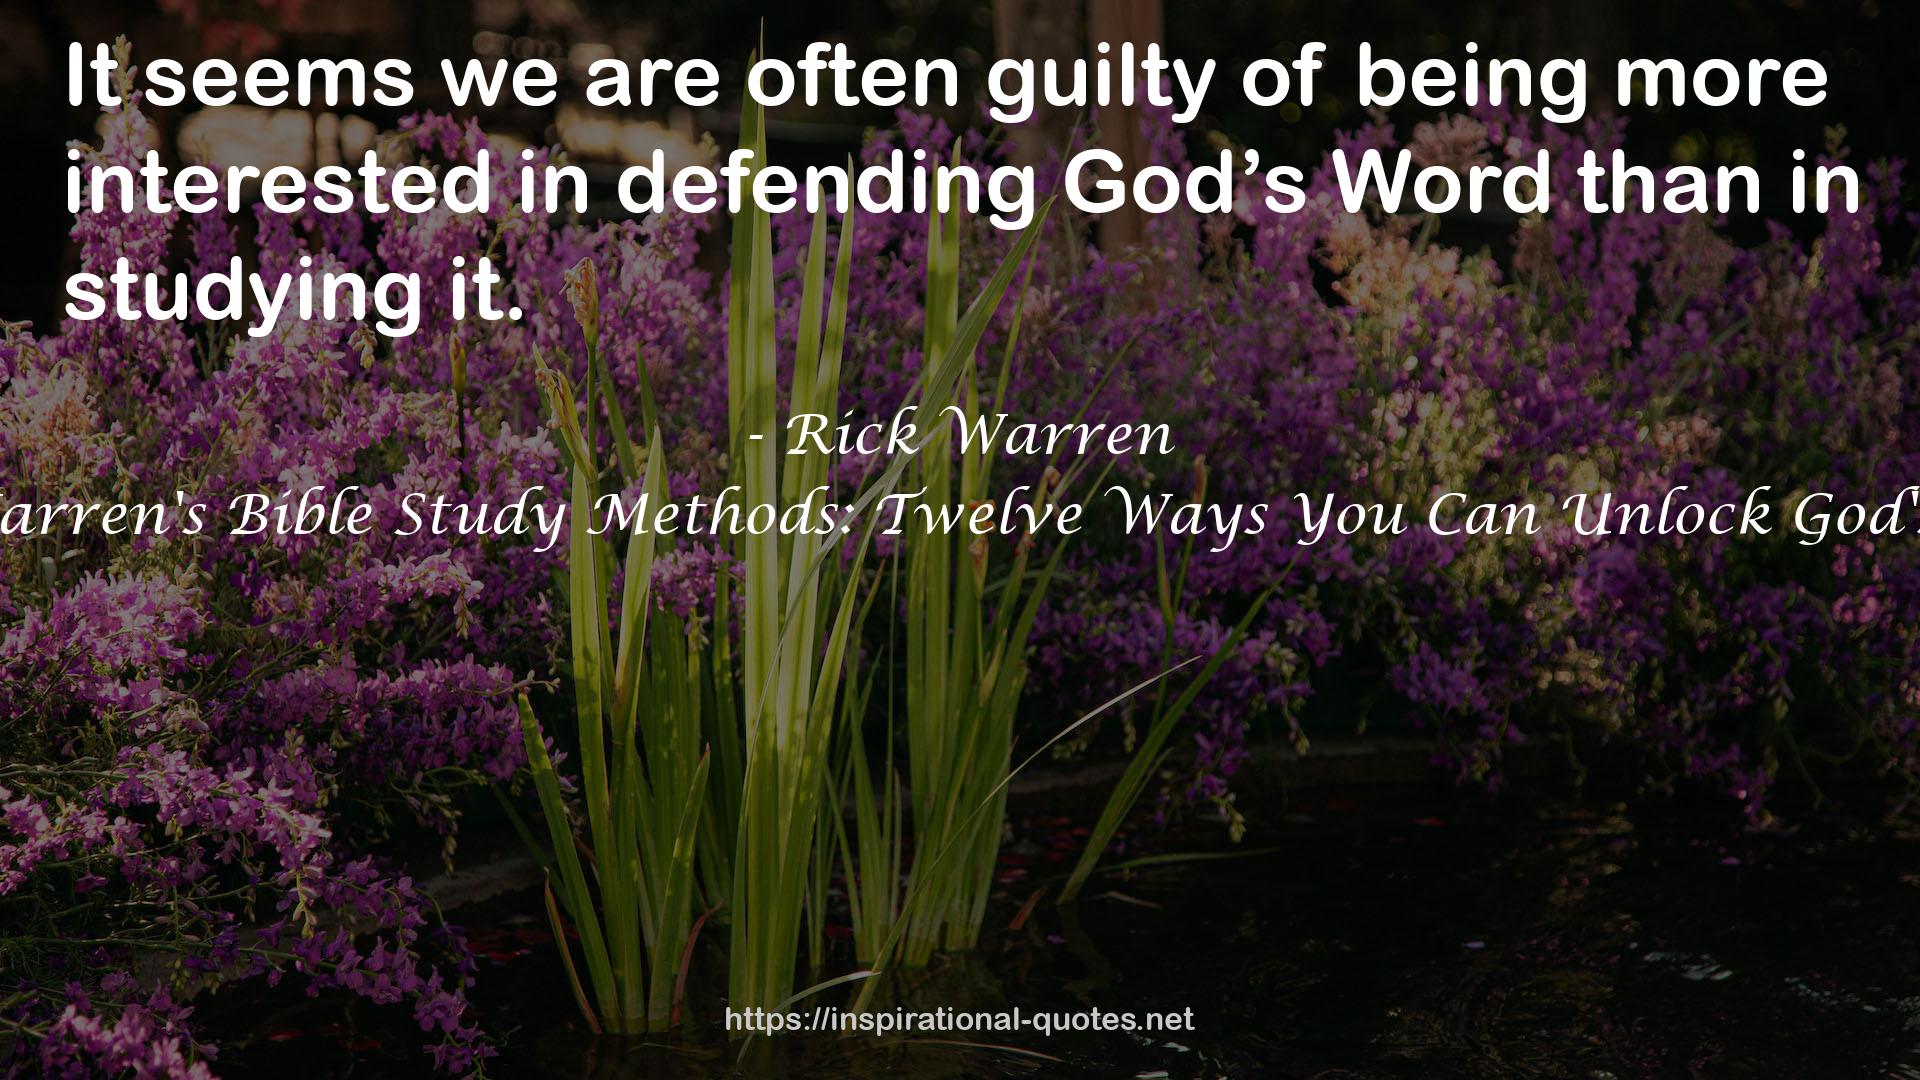 Rick Warren's Bible Study Methods: Twelve Ways You Can Unlock God's Word QUOTES